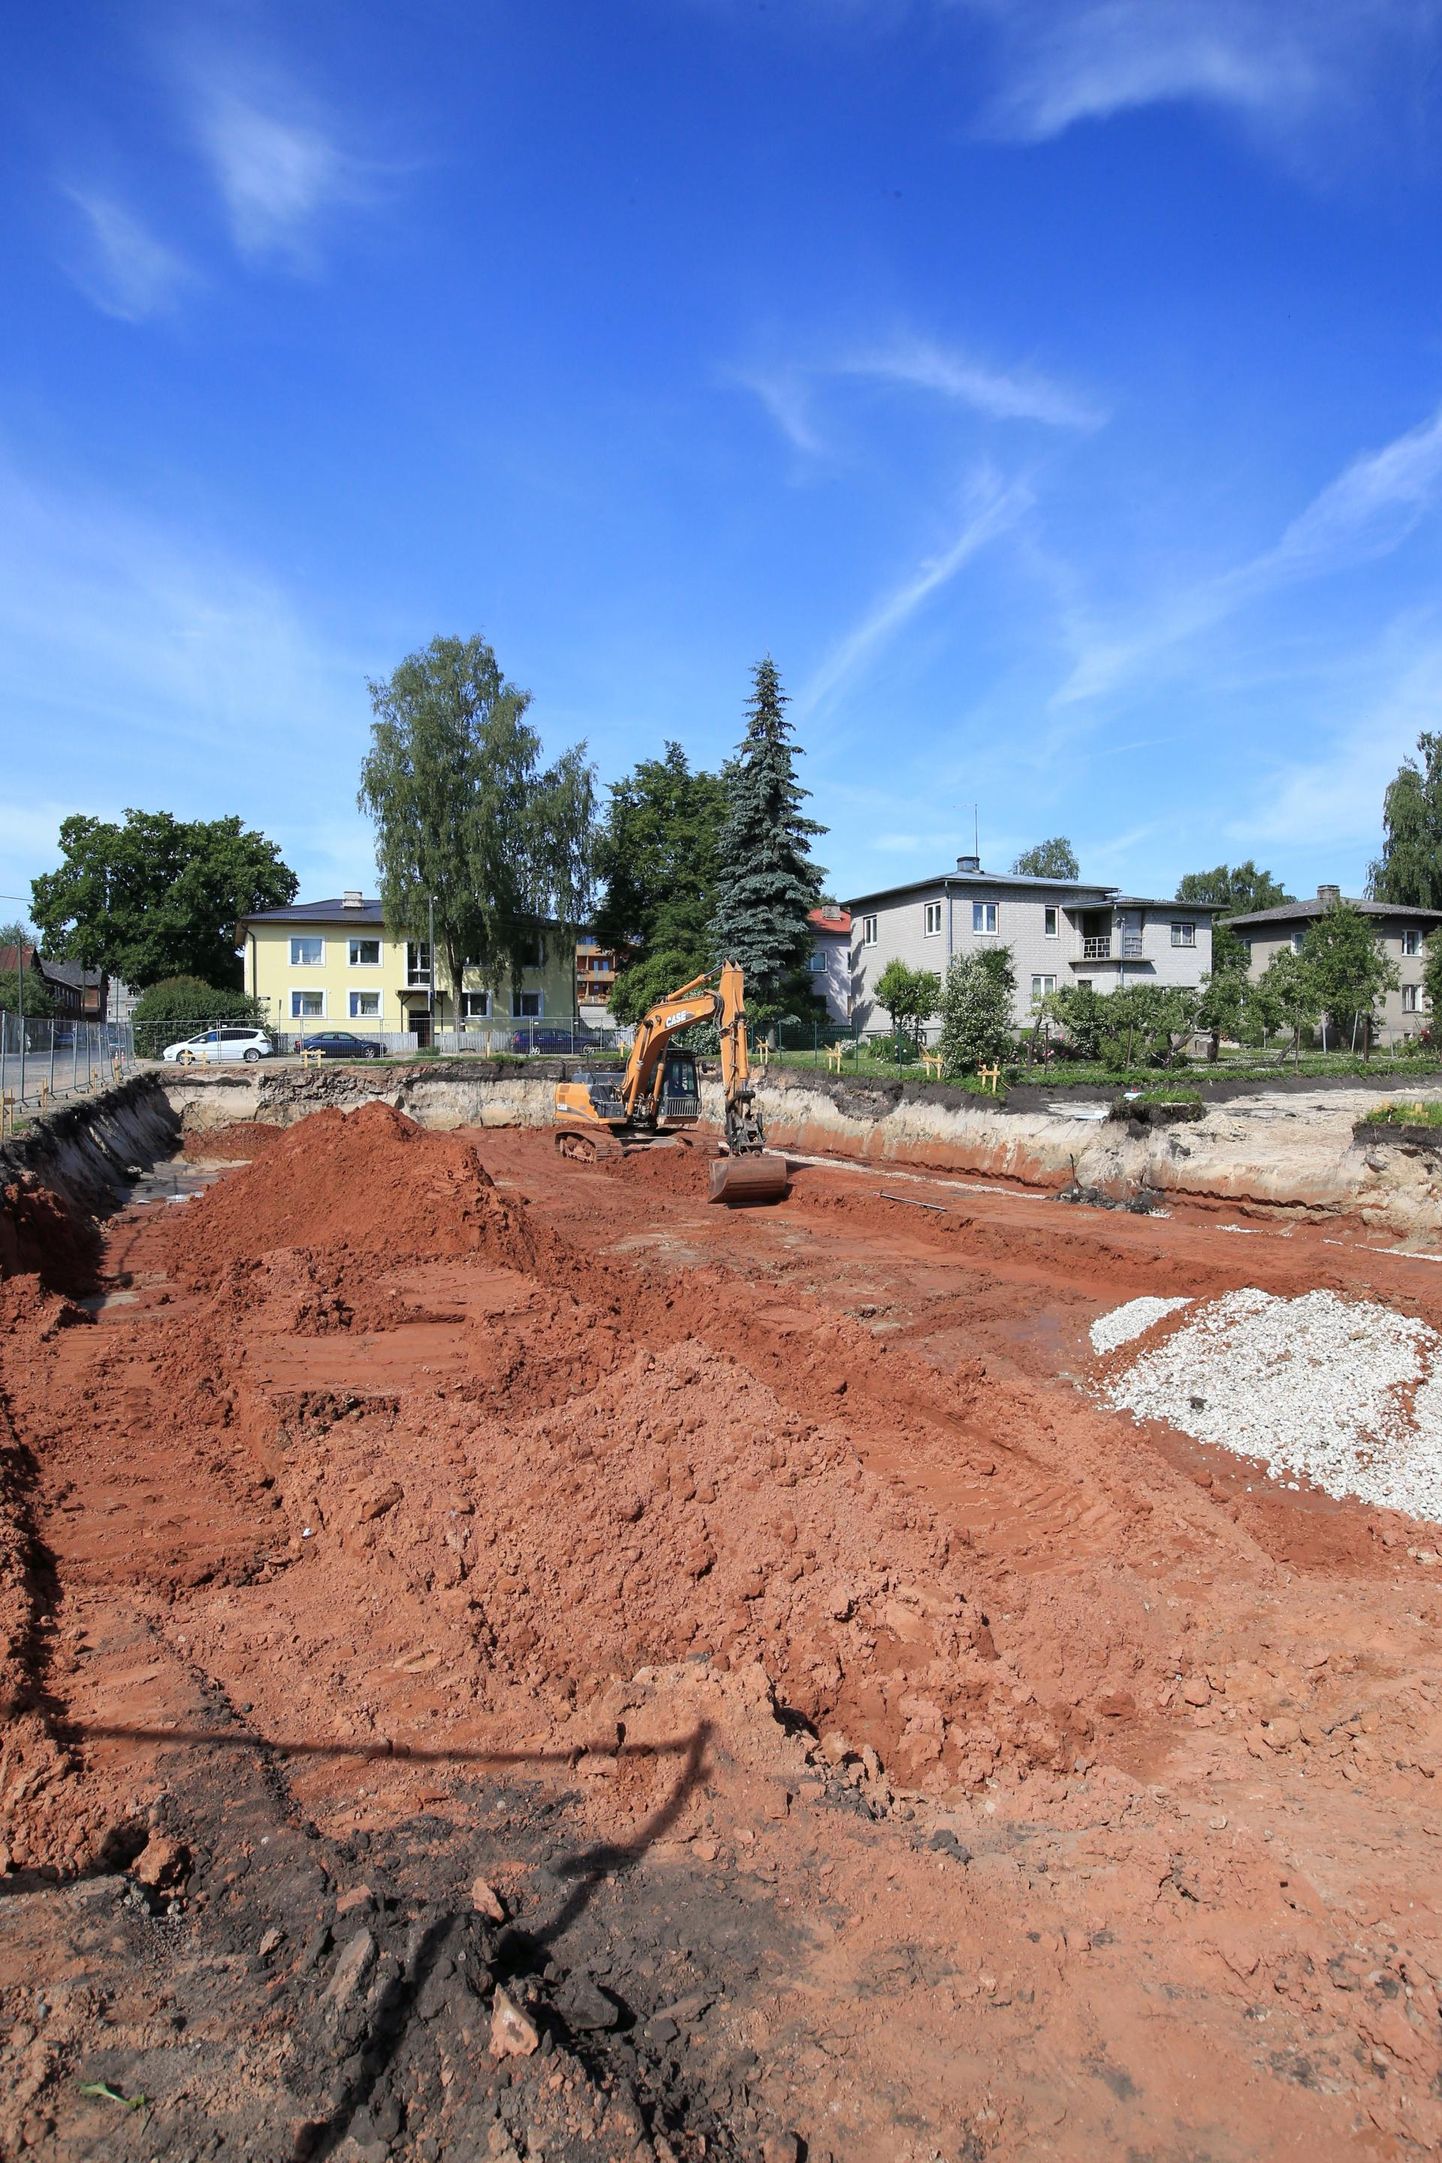 Karlovas alustati uute kortermajade ehitust. Järgmisel aastal peaks esimene, Jõe 4 maja valmis saama.